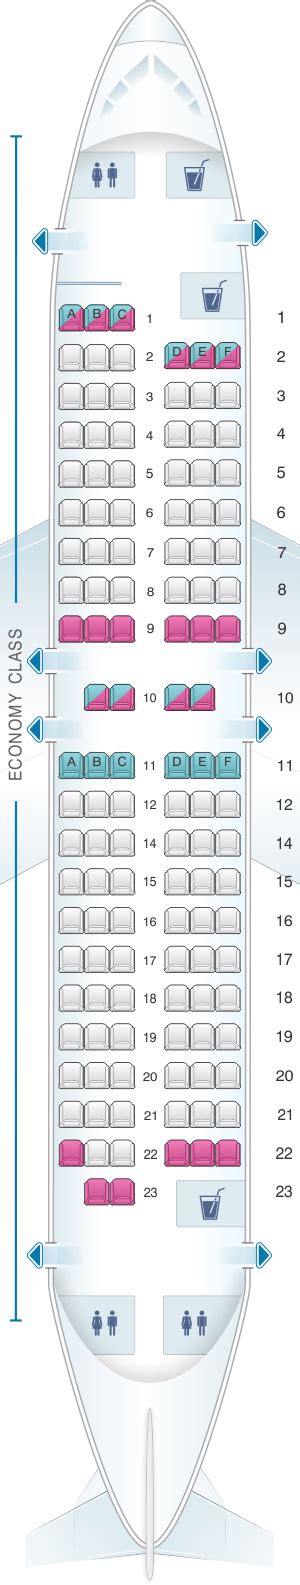 Seat Map Scandinavian Airlines Sas Boeing B737 600